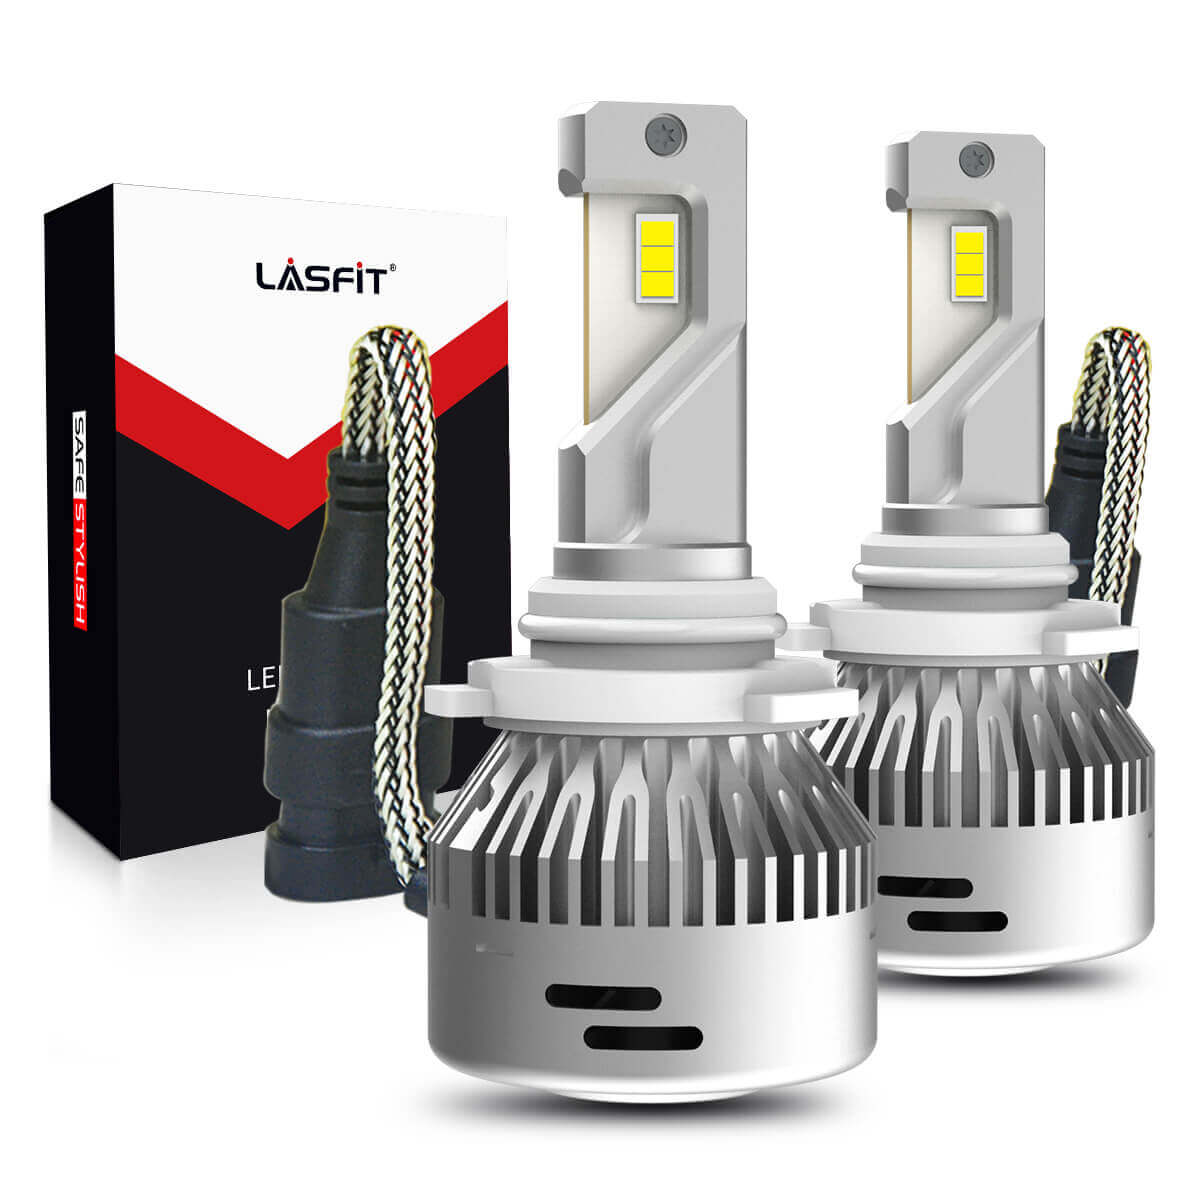 Lasfit 9005 HB3 LED Headlight Bulbs Amplified Flux Beam, Internal Driver  60W 6000LM 6000K,2 Bulbs 